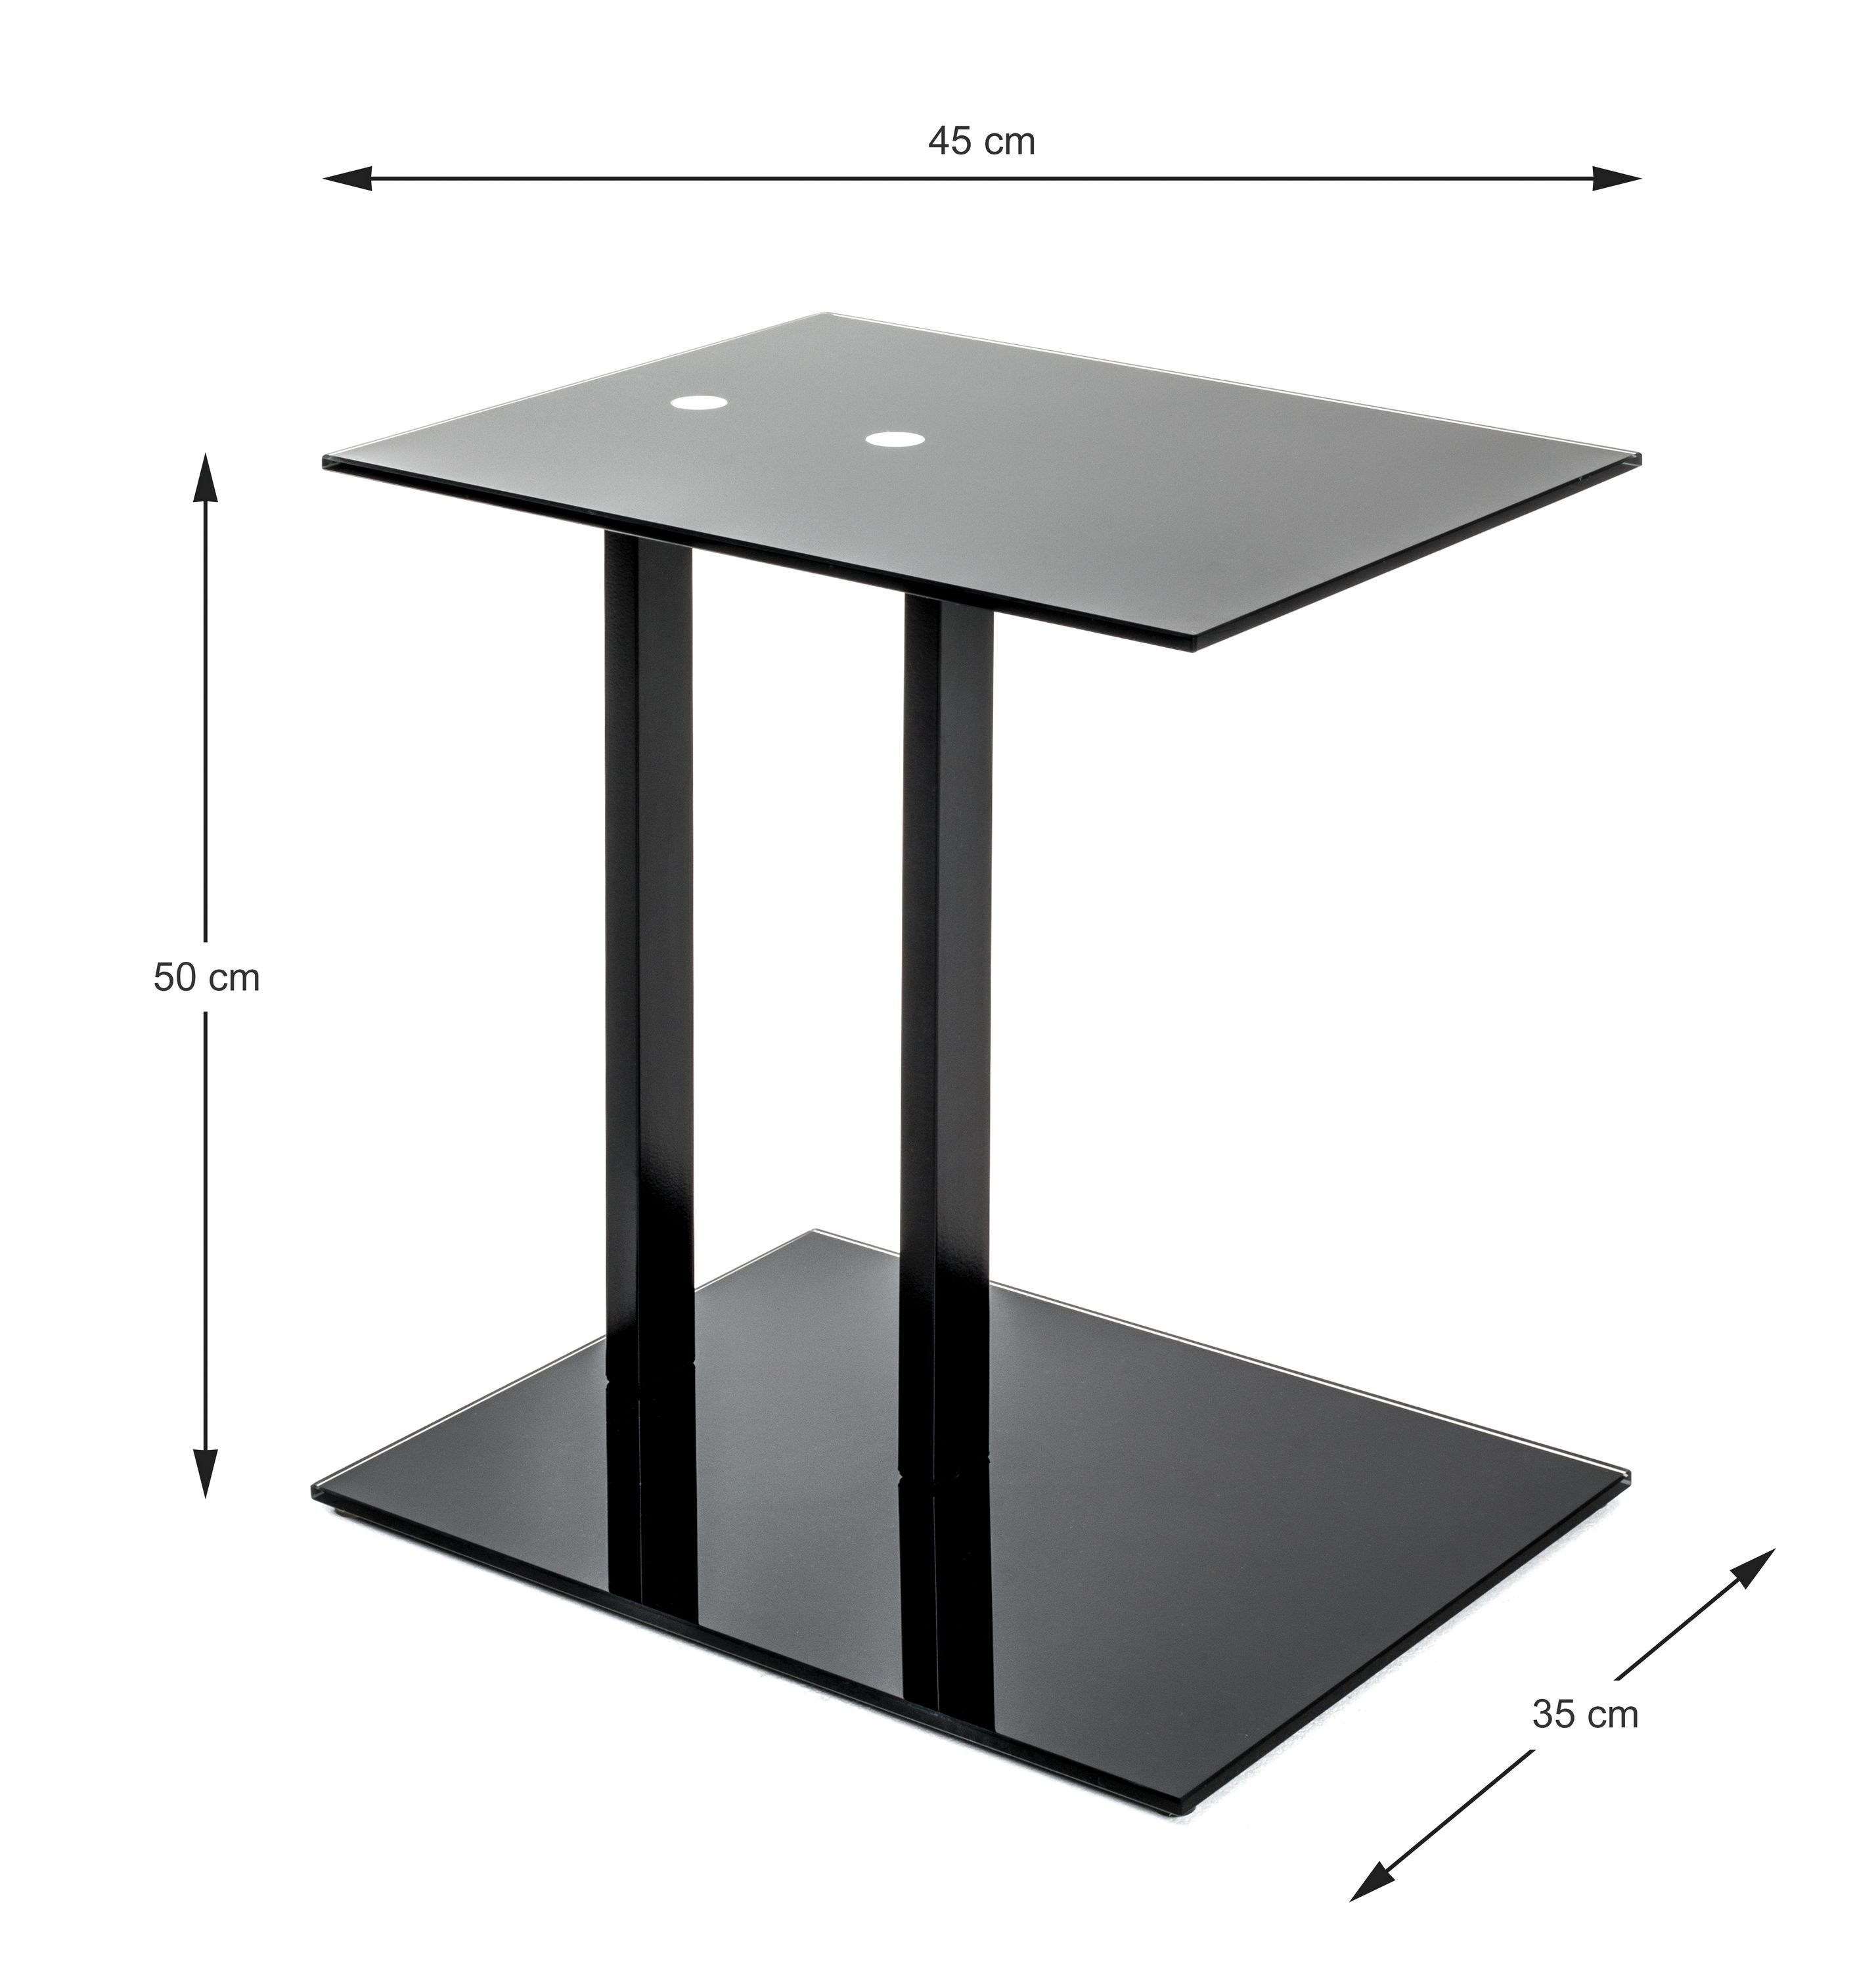 HAKU Beistelltisch Beistelltisch, HAKU schwarz Möbel 45x50x35 Beistelltisch cm) (BHT cm 45x50x35 BHT